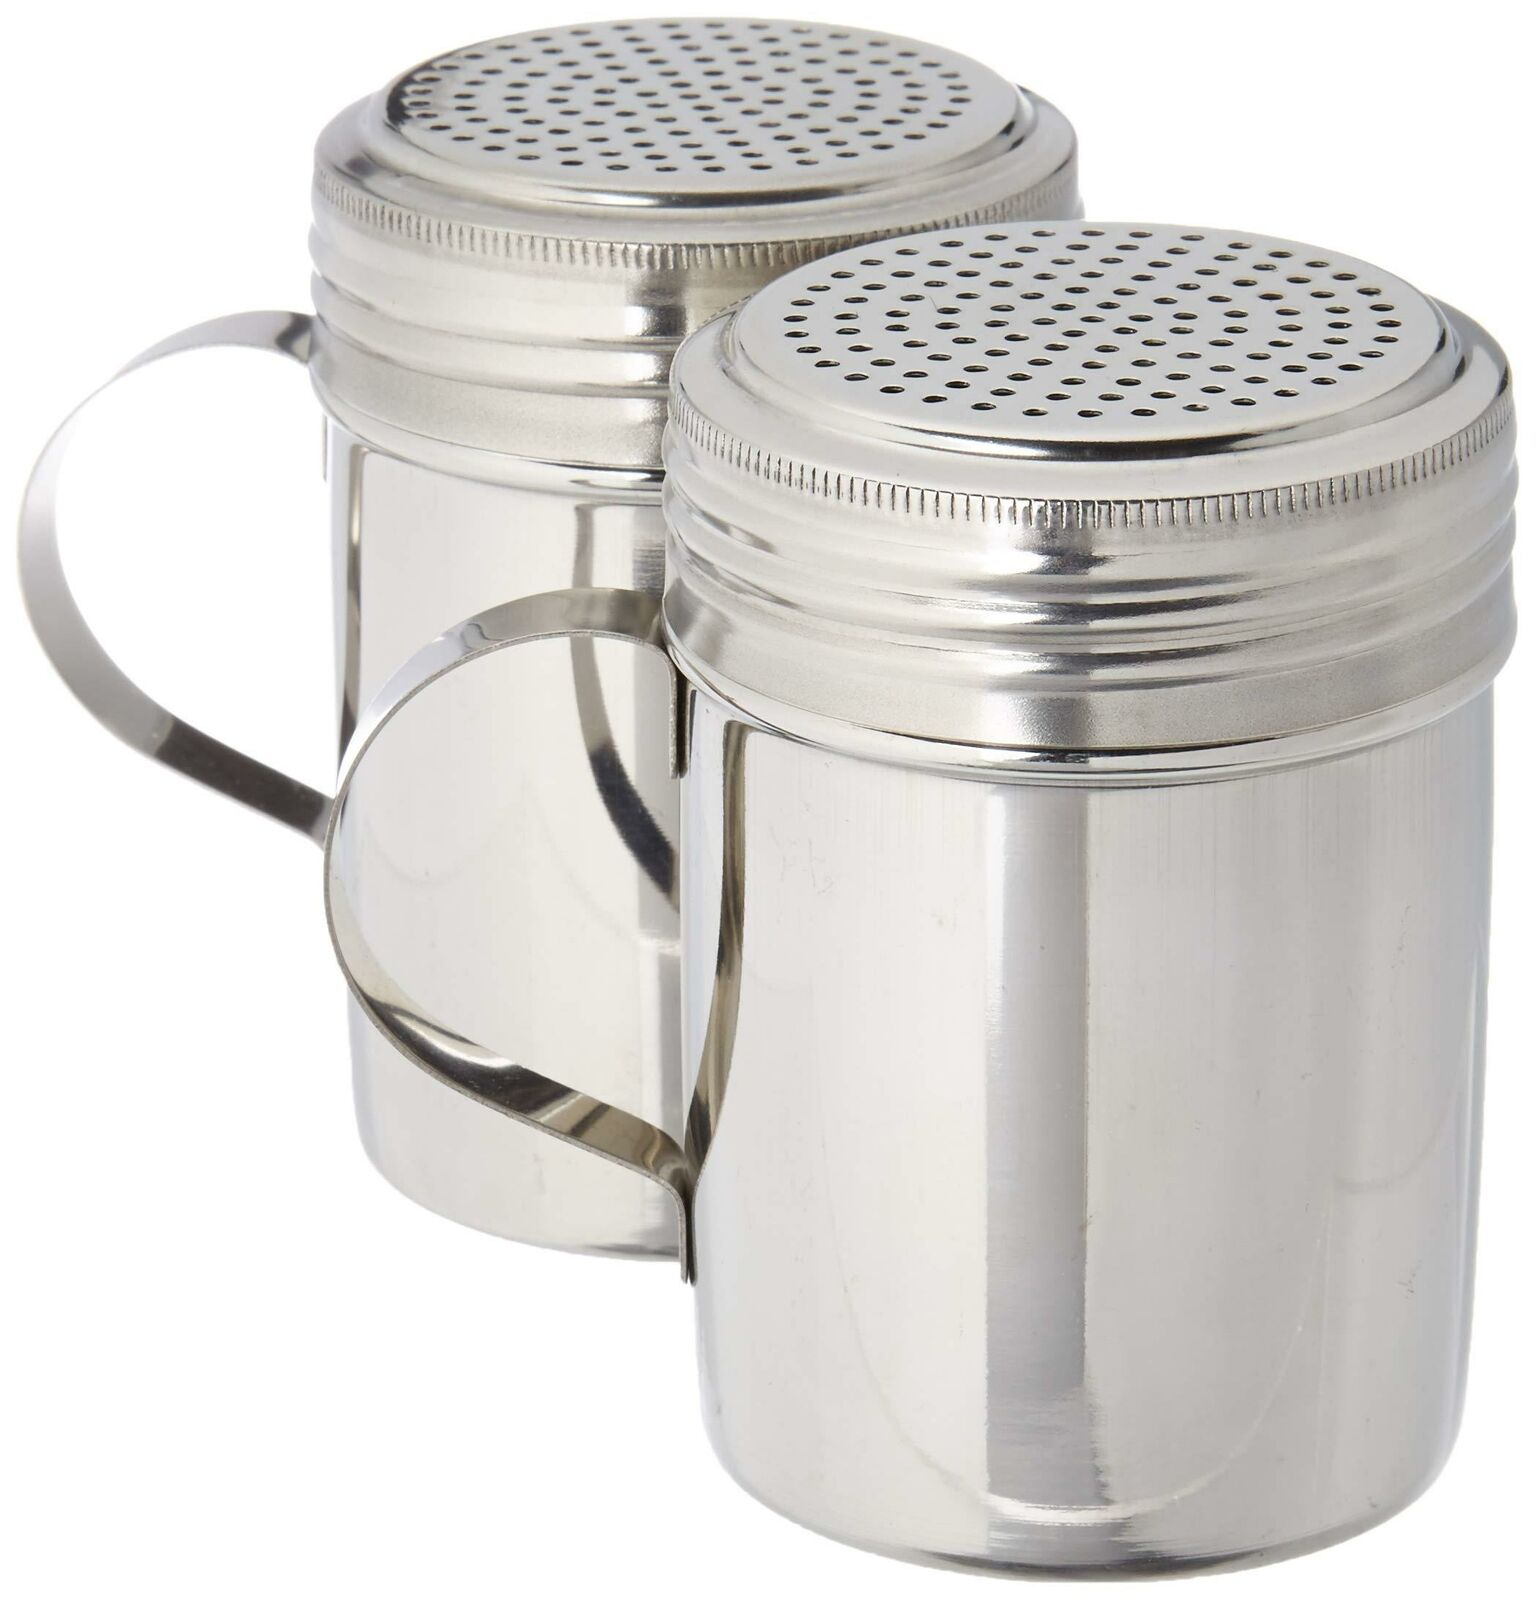 Stainless Steel Versatile Dredge Shaker Great Salt Pepper Sugar Shaker Set Of 2